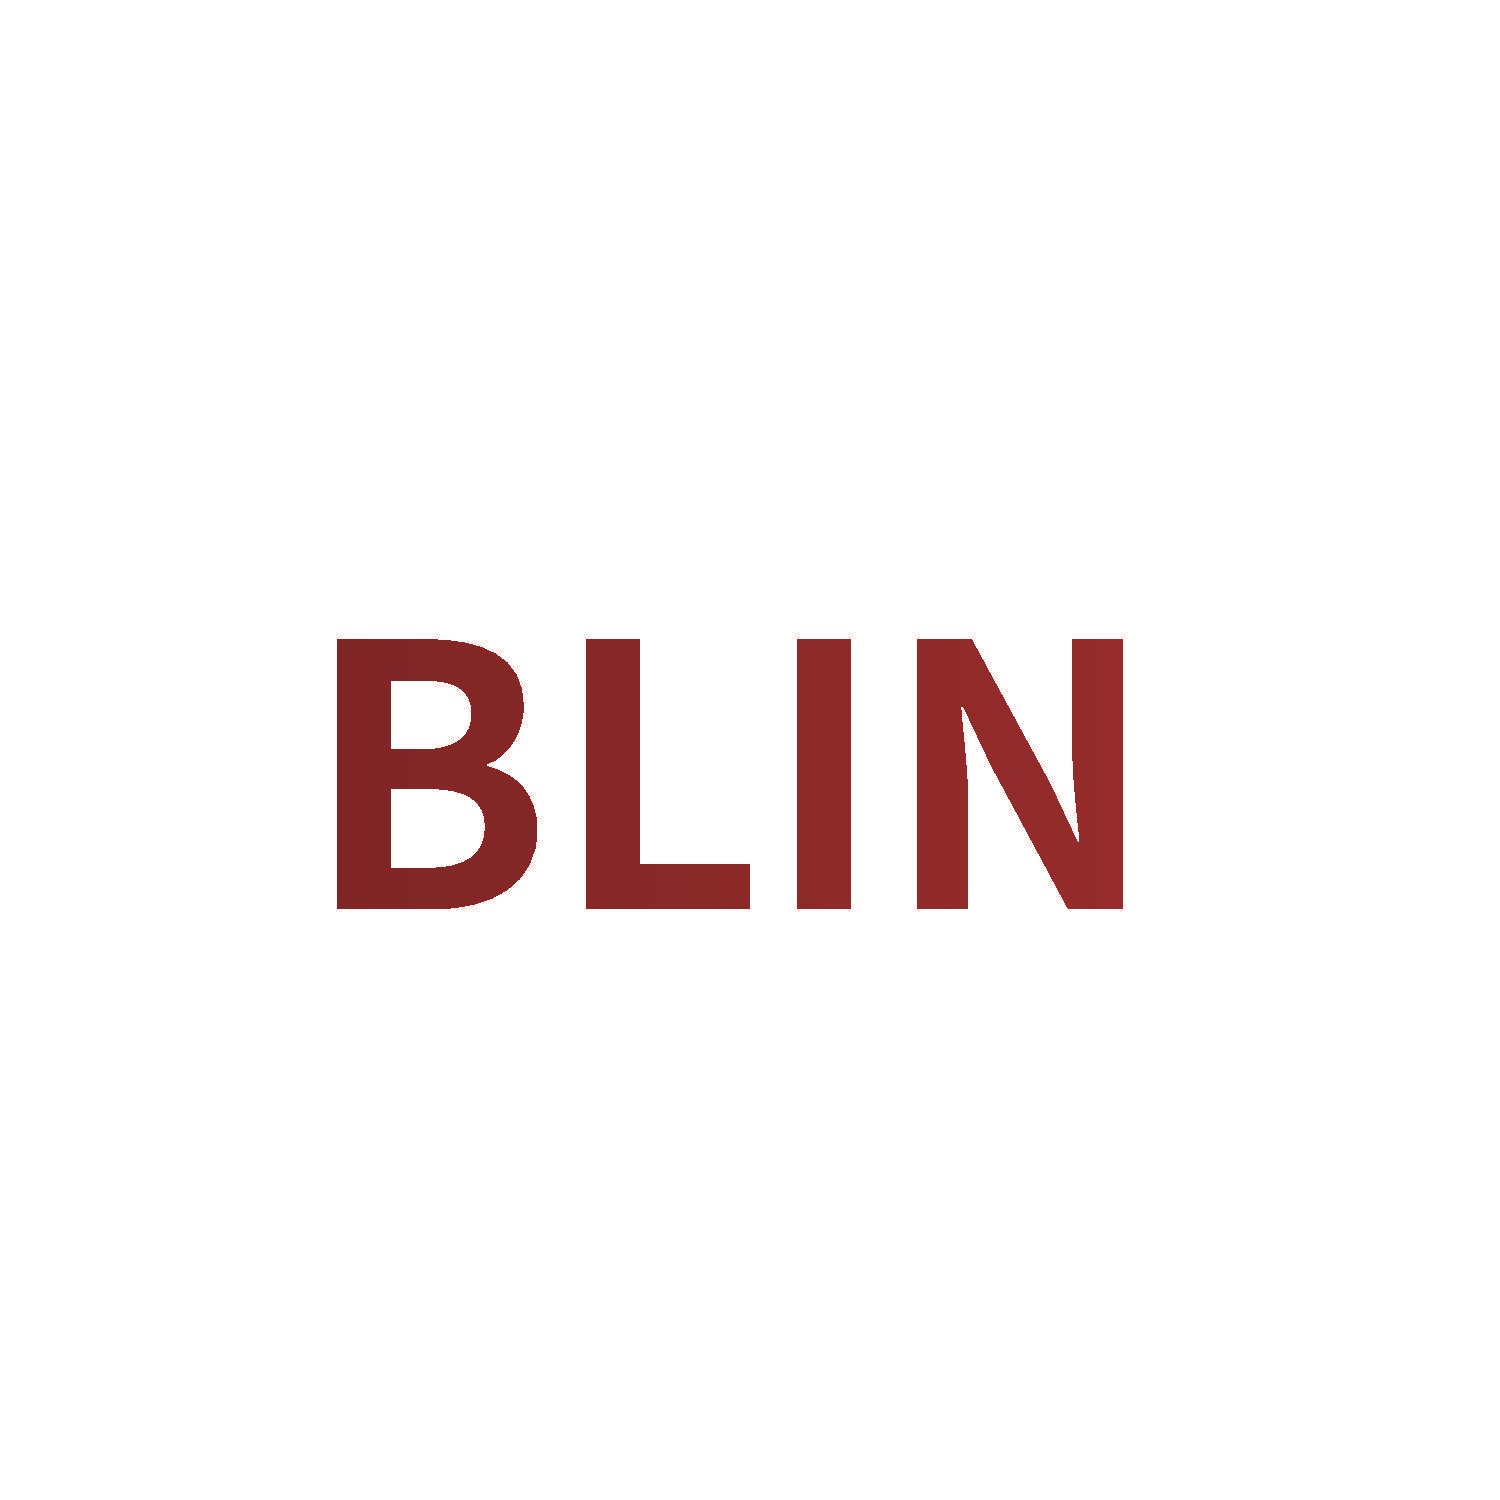 BLIN